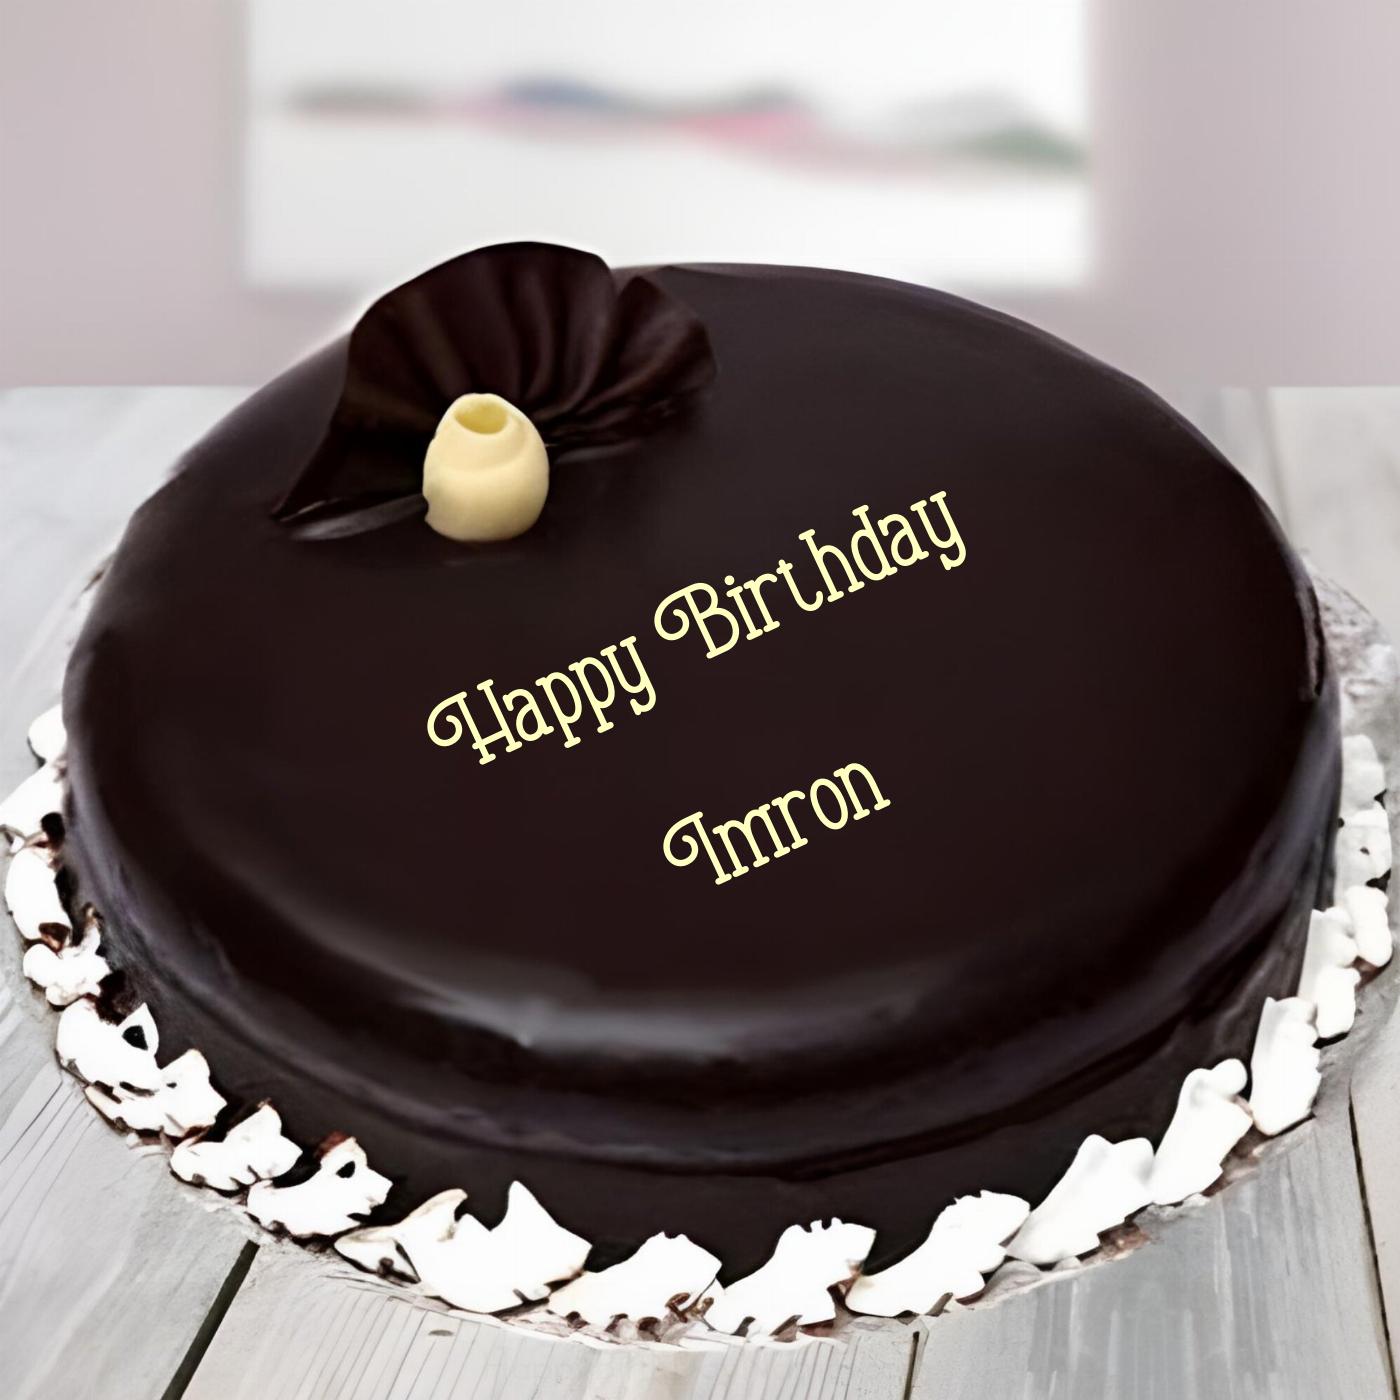 Happy Birthday Imron Beautiful Chocolate Cake